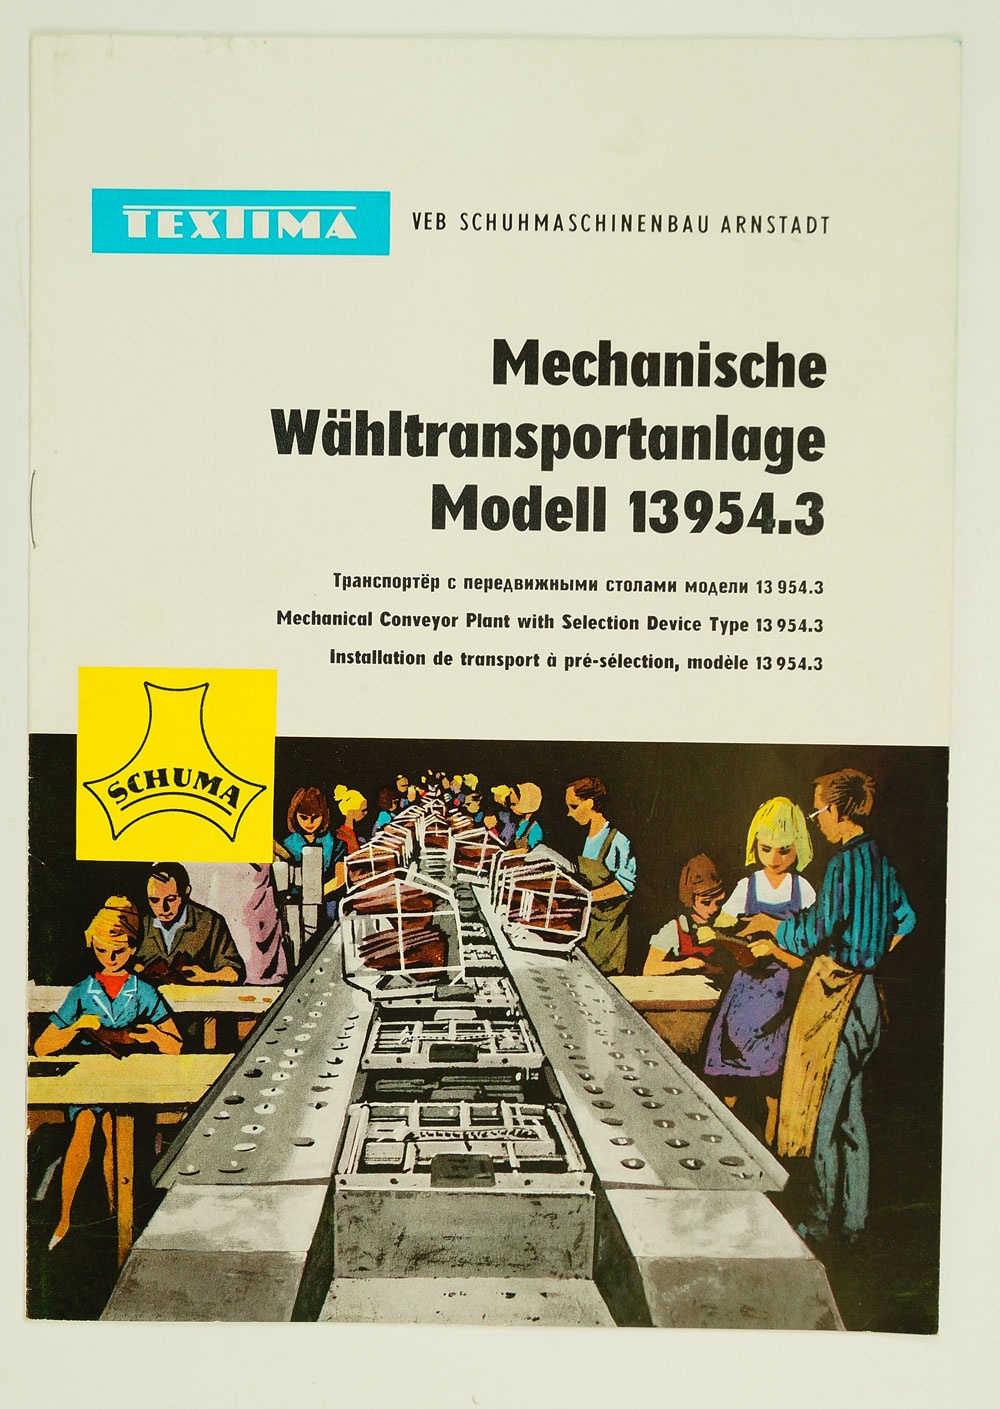 Prospekt für Mechanische Wähltransporanlage Modell 13954.3, 1966 (Museum Weißenfels - Schloss Neu-Augustusburg CC BY-NC-SA)